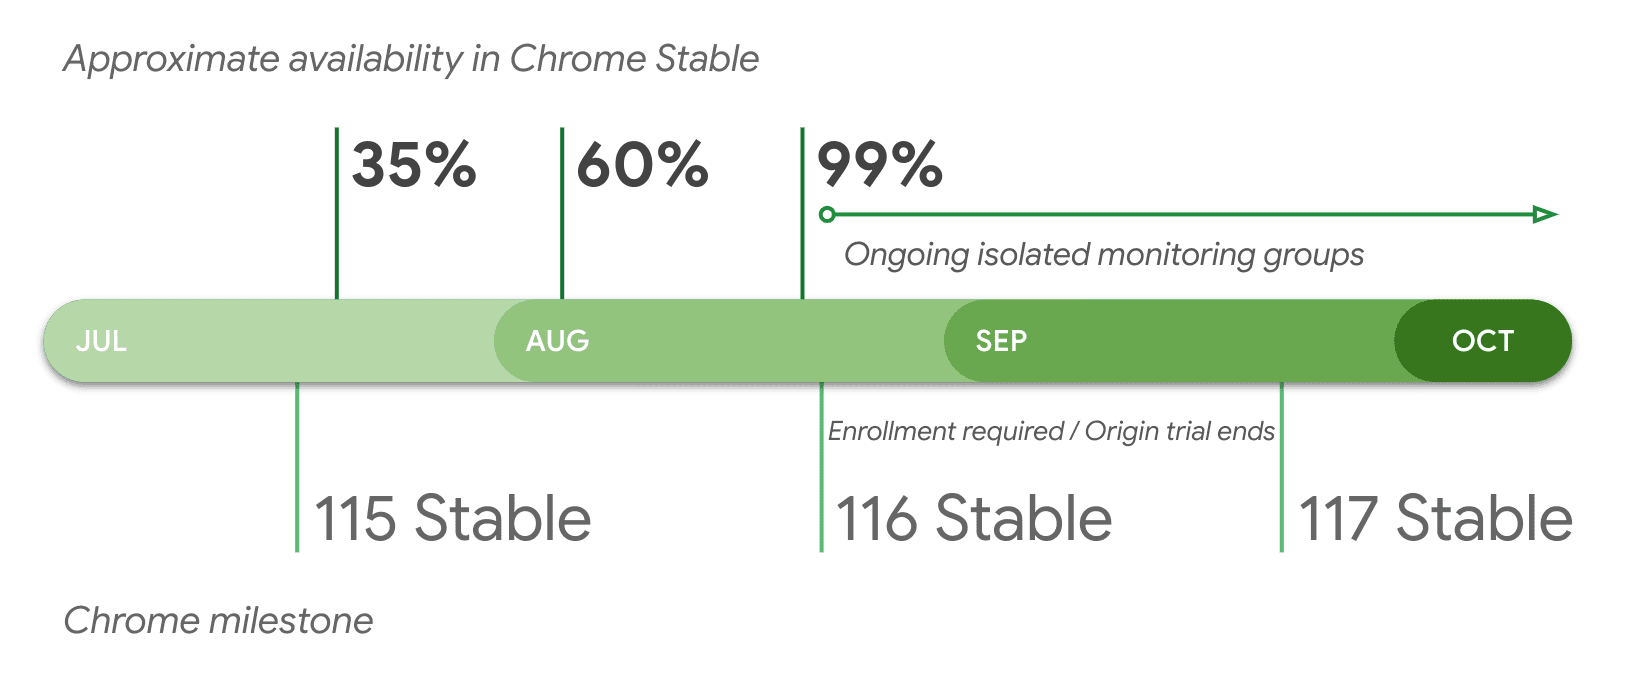 Disponibilidad aproximada en la versión estable de Chrome por versión.